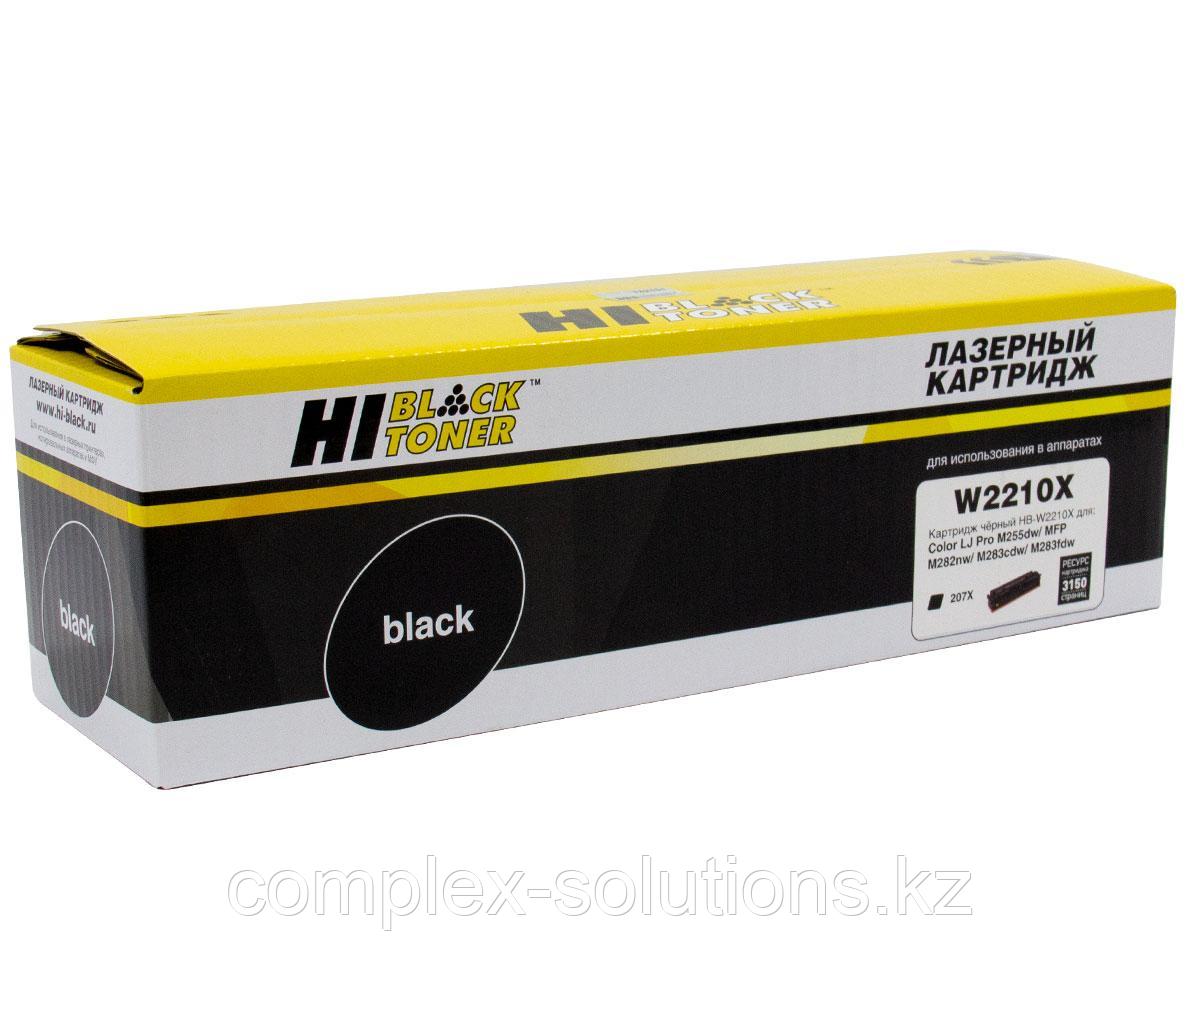 Картридж Hi-Black [W2210X] для H-P CLJ Pro M255dw | MFP M282nw | M283fdn, Bk, 3,15K, без чипа | [качественный